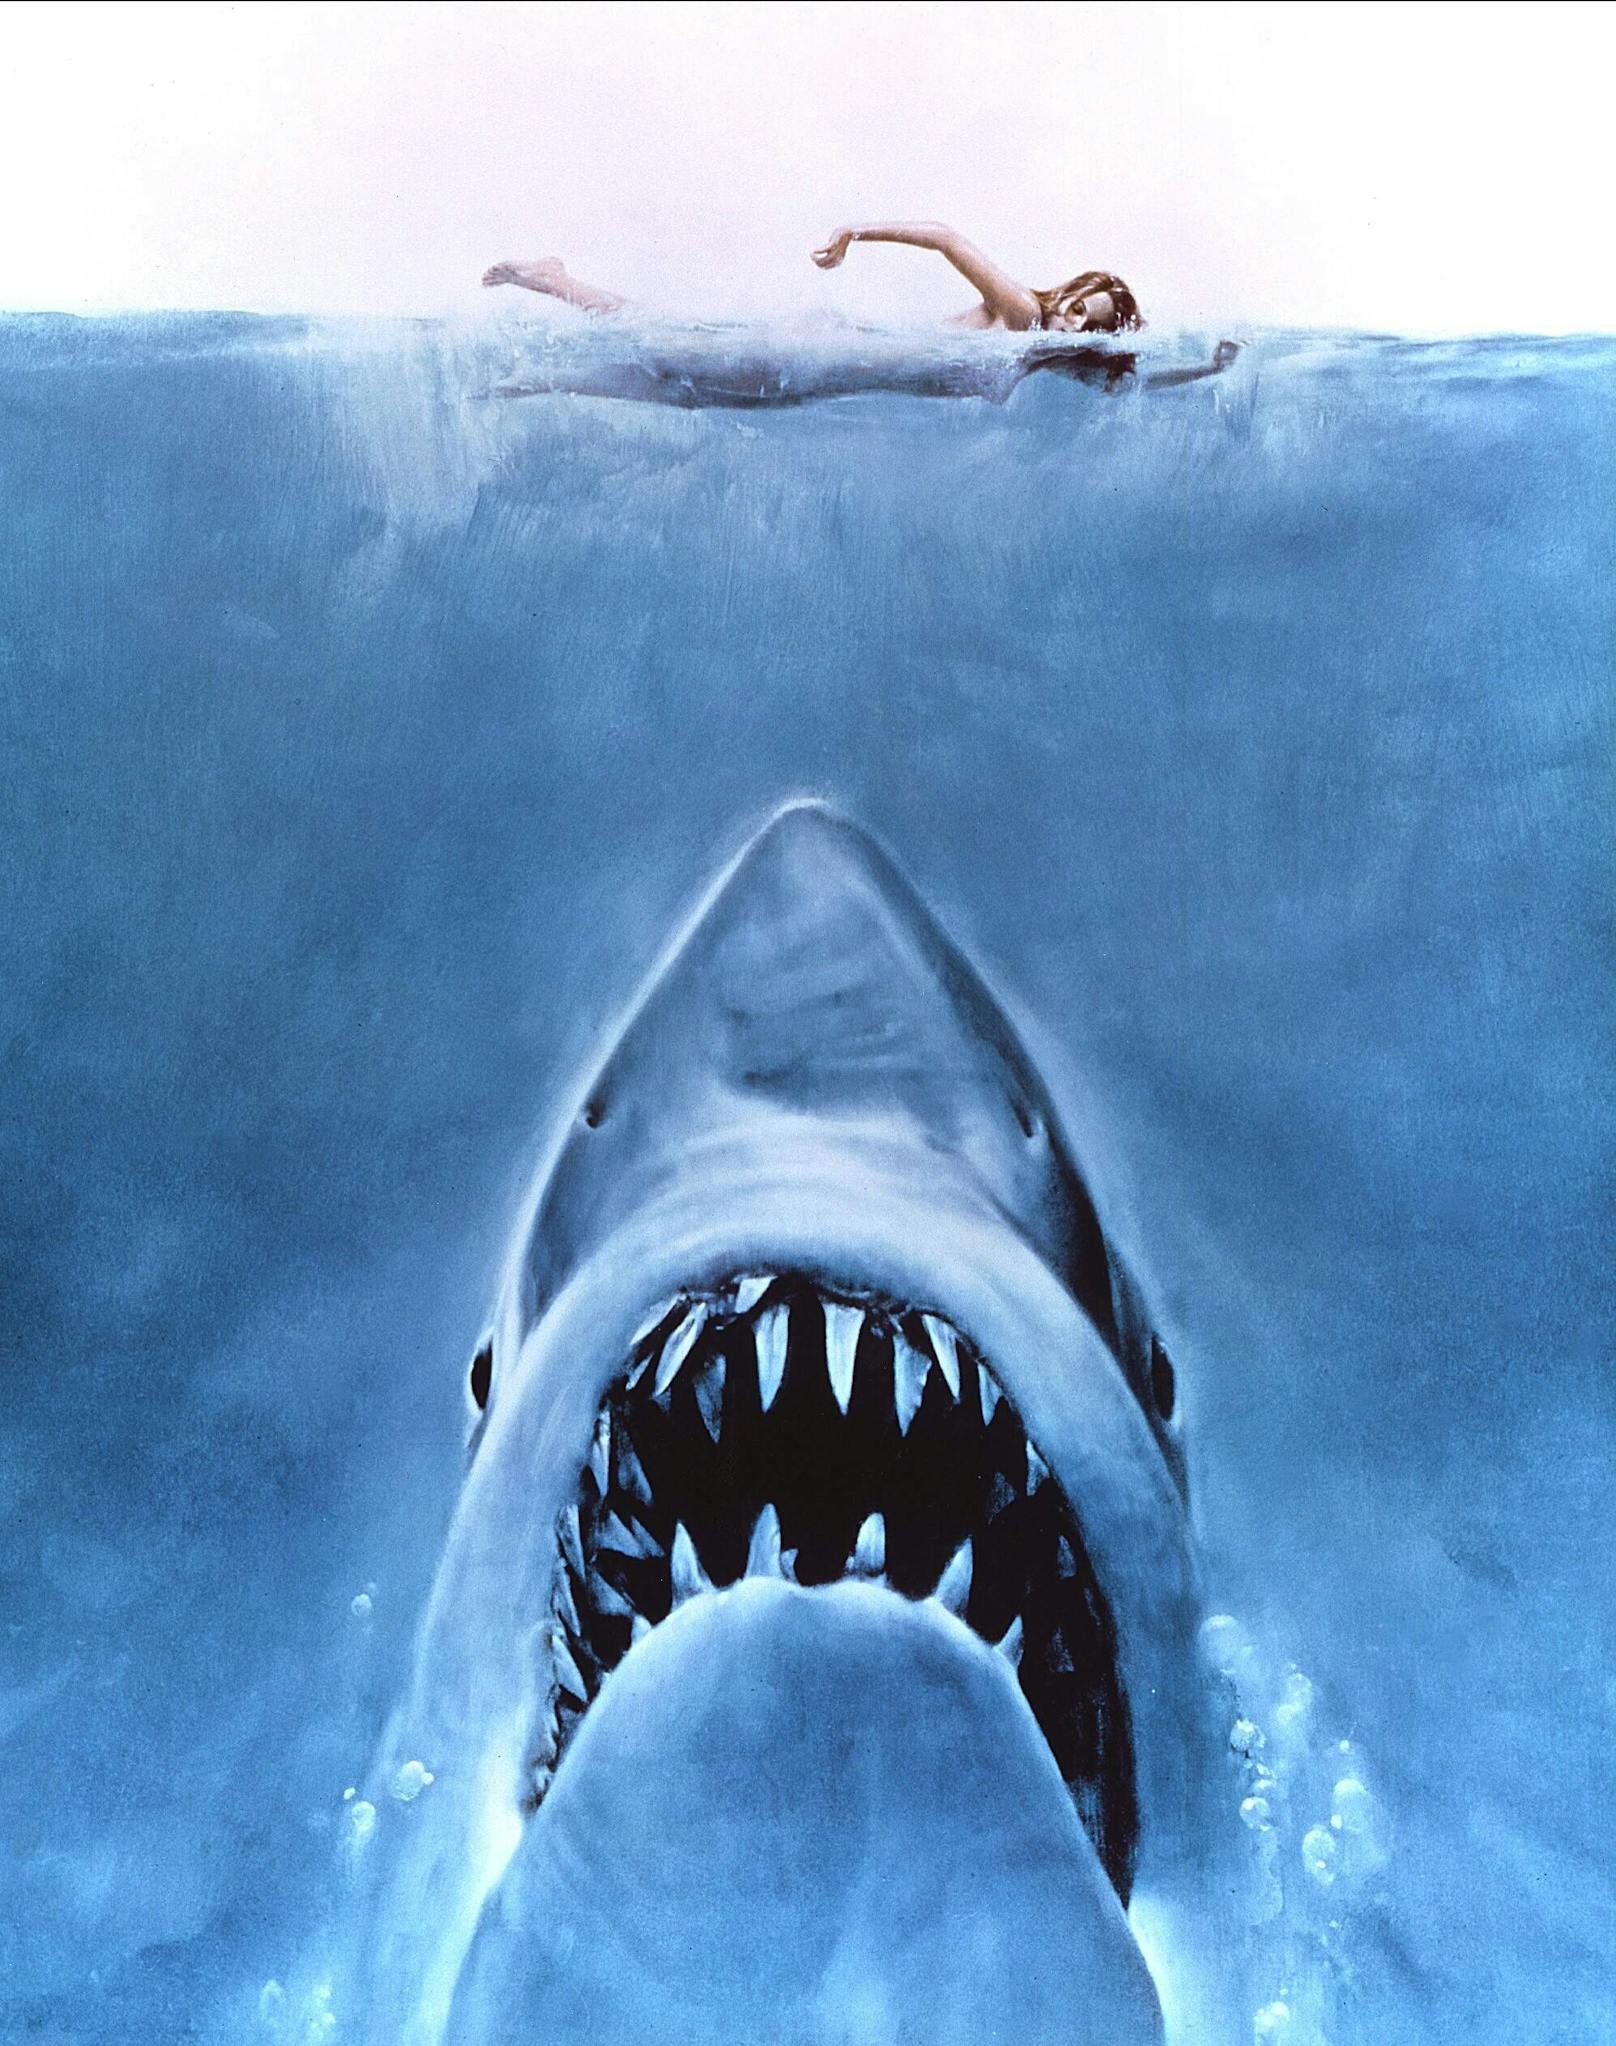 "Der Weiße Hai" gilt als erster Sommer-Blockbuster der Filmgeschichte. Filme, die in den Sommermonaten anliefen, hatten davor keine Chance an den Kinokassen. Das änderte sich 1975, als Spielbergs Schocker auf das Publikum losgelassen wurde.